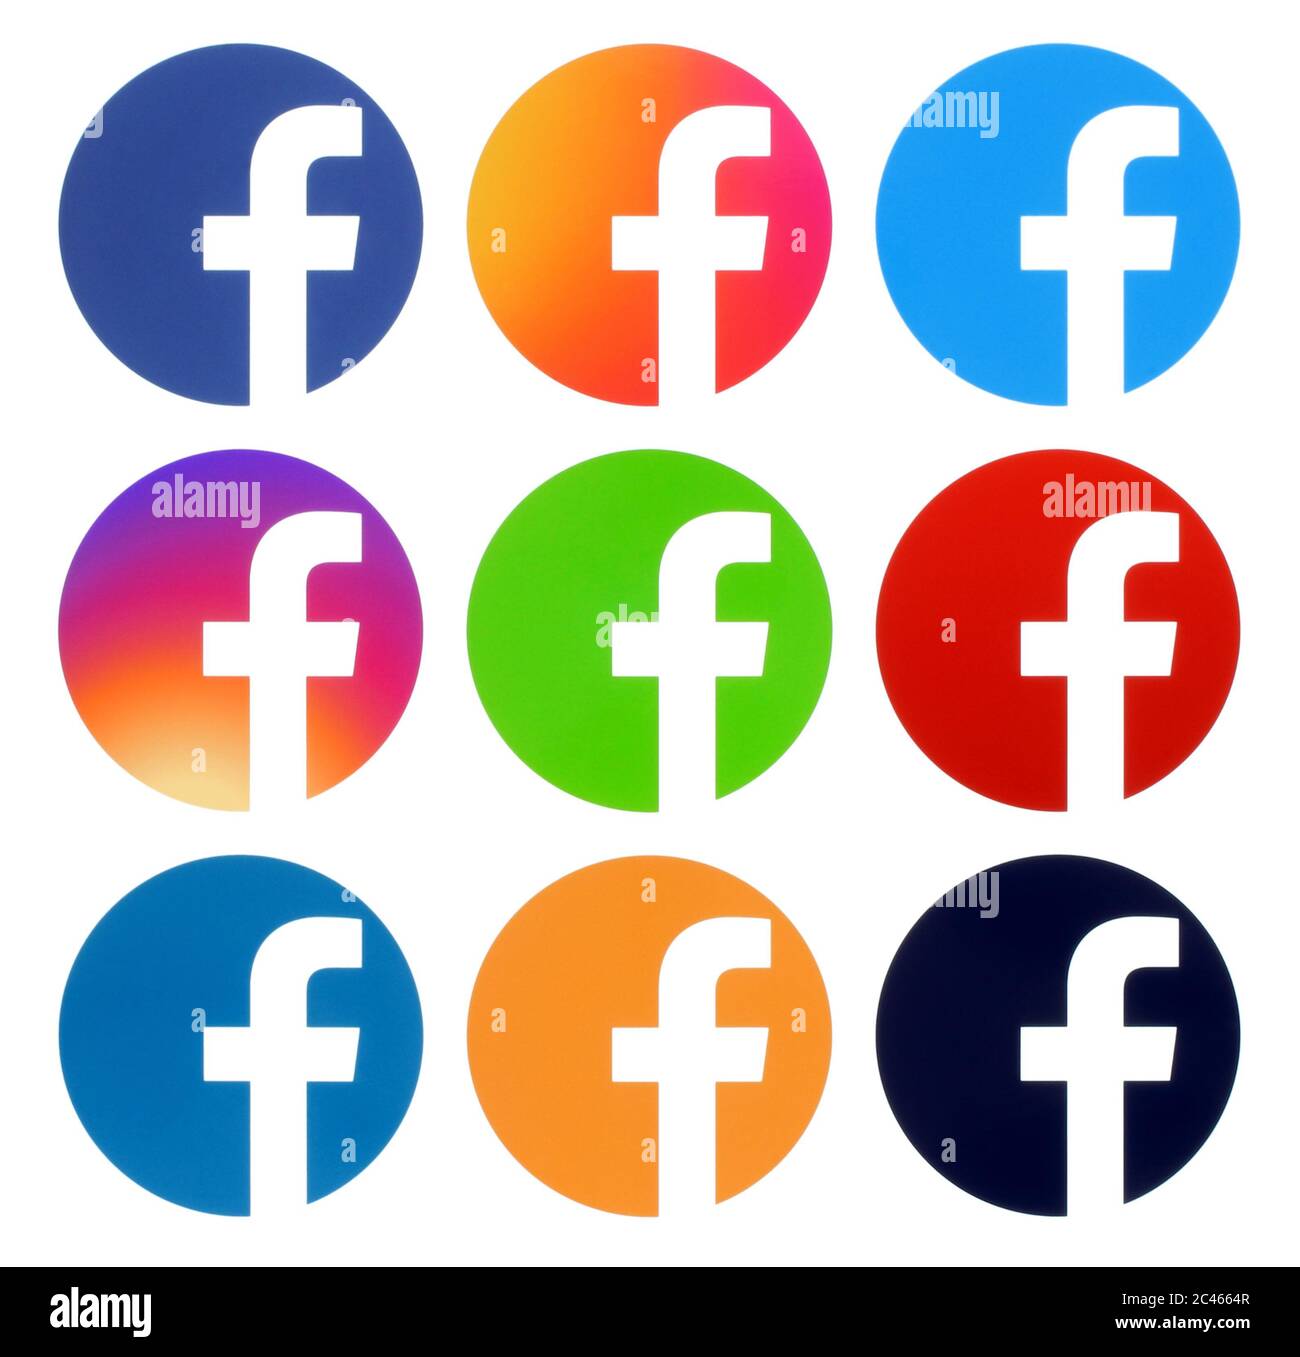 Kiev, Ukraine - Aplril 25, 2019: Collection de logos Facebook à tour de couleur, imprimé sur papier blanc. Facebook est un service de réseautage social bien connu Banque D'Images